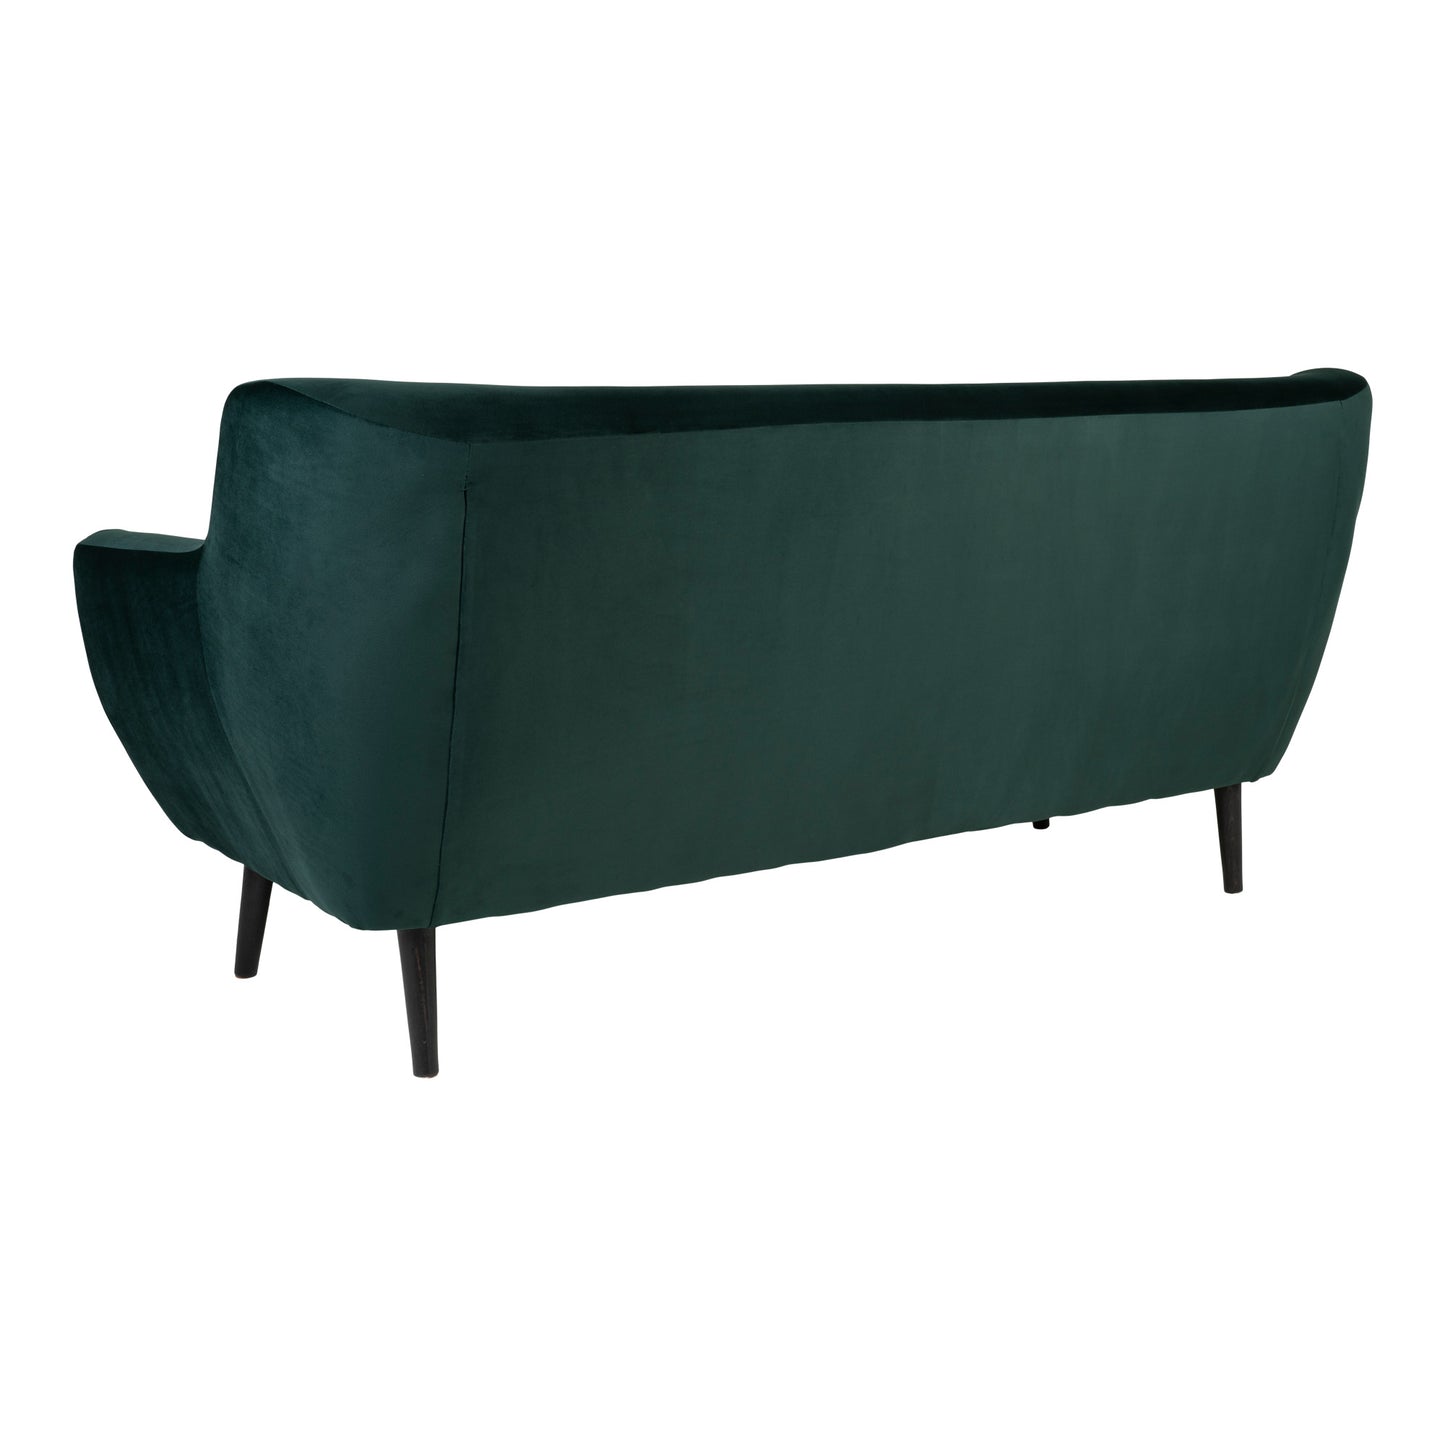 Monte 3 Personers sofa i mørkegrøn velour med sorte ben (En lille rids i stoffet uden betydning)